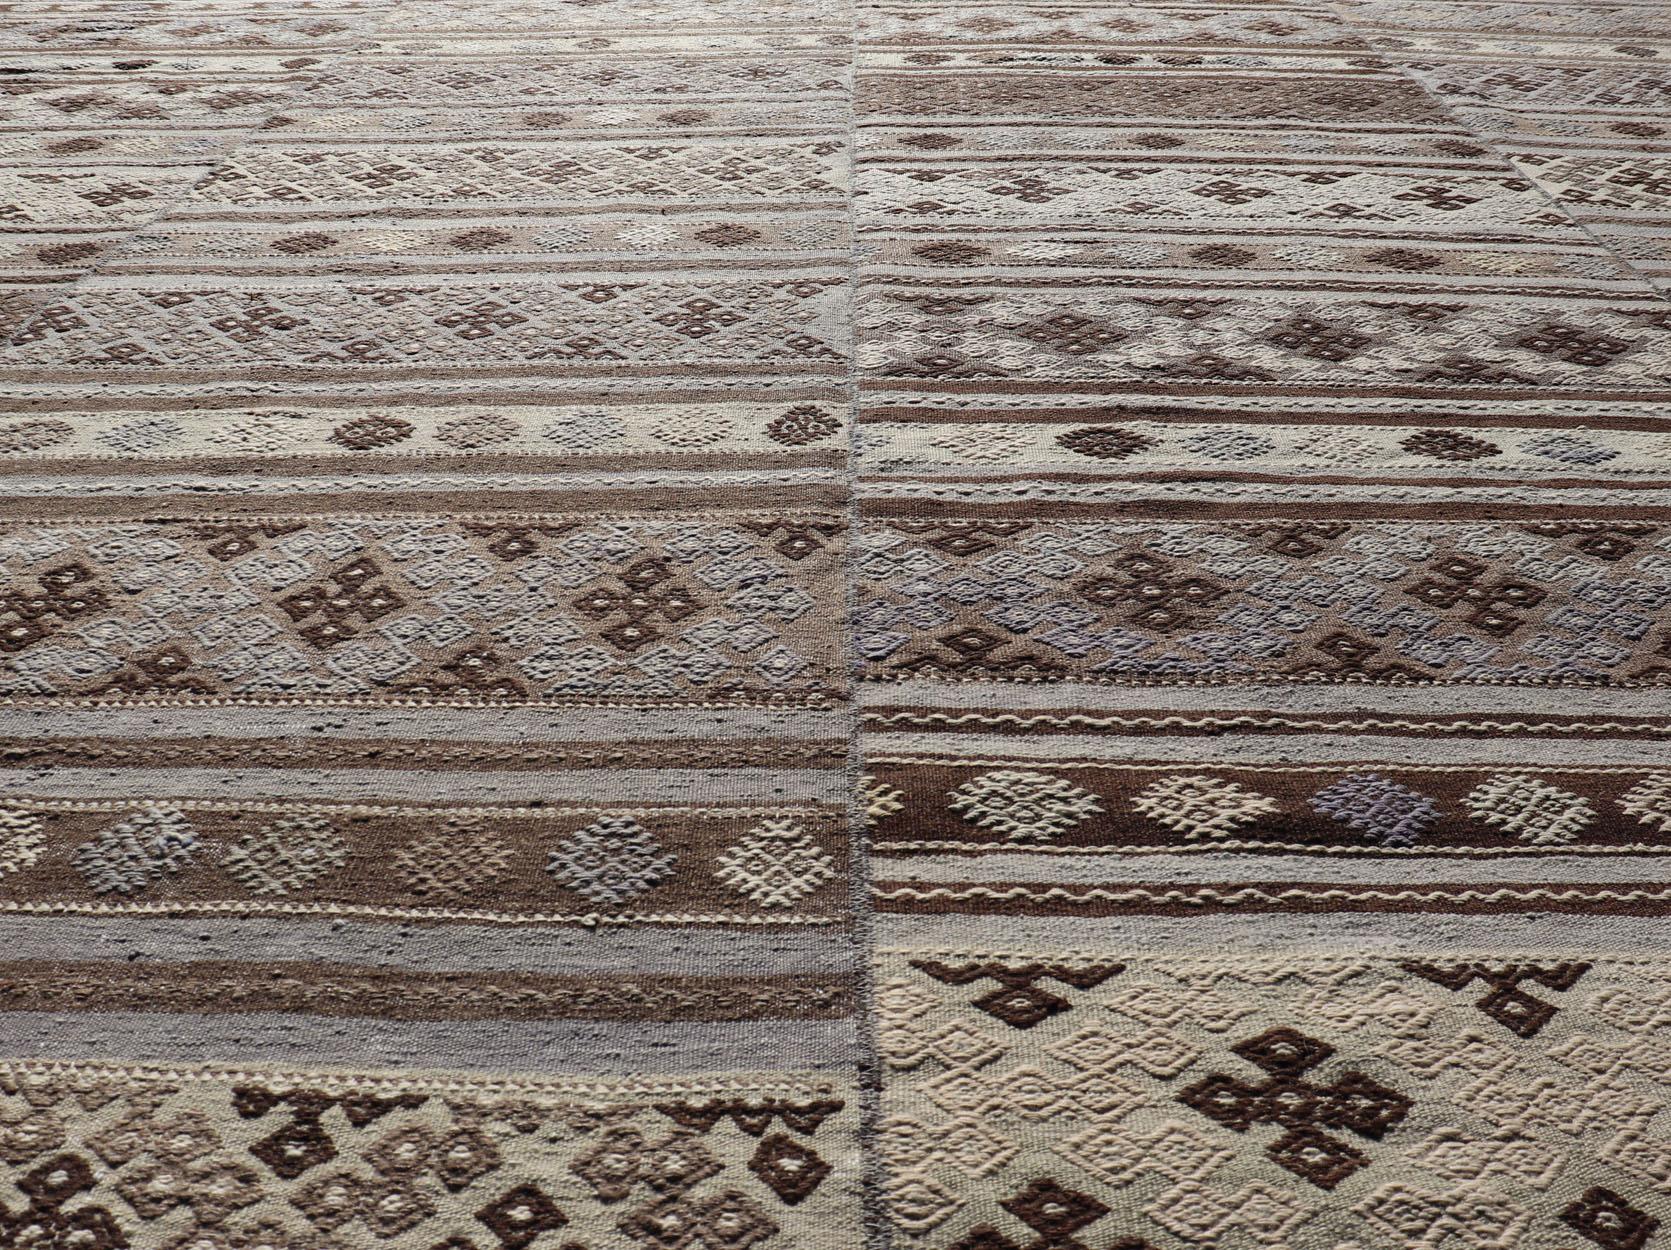 Maße: 10'10 x 11'6 
Großer flachgewebter türkischer Kilim-Teppich aus Wolle mit Streifendesign im Vintage-Stil. Keivan Woven Arts; Teppich EN-14041, Herkunftsland / Art: Türkei / Kelim, um 1950.

Dieser flachgewebte türkische Stammeskelim wurde von